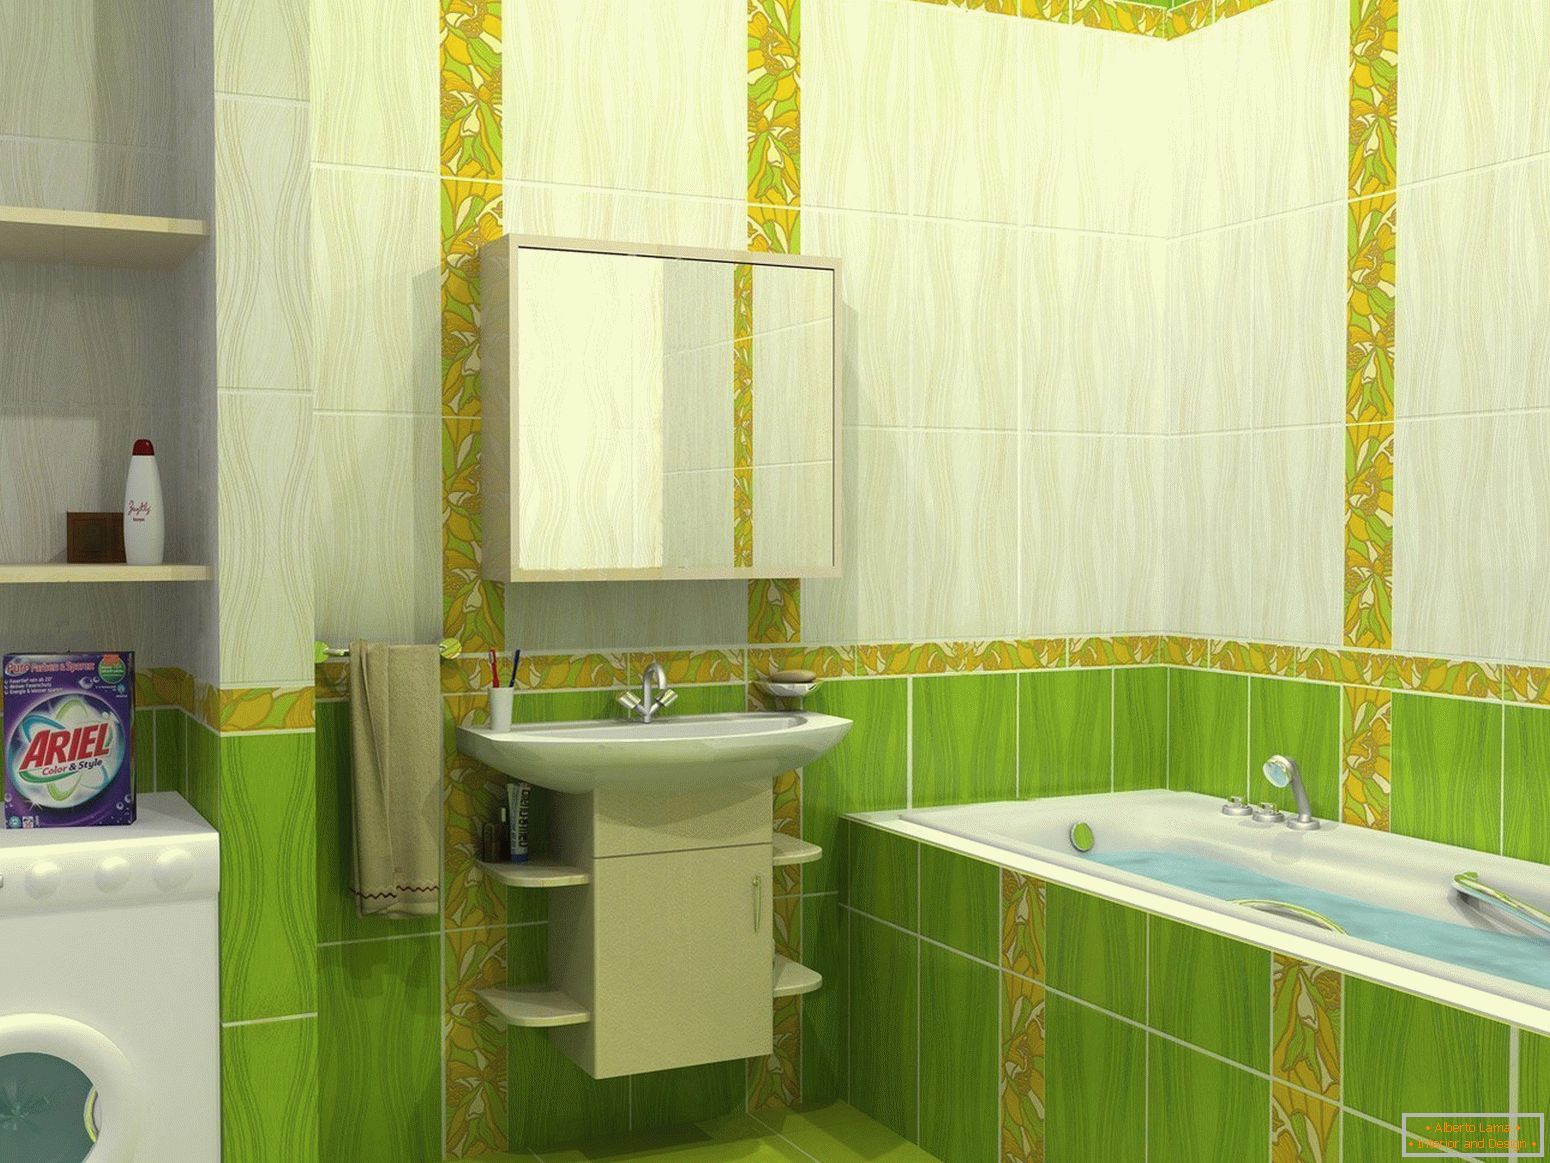 Návrh koupelny v zelených tónech